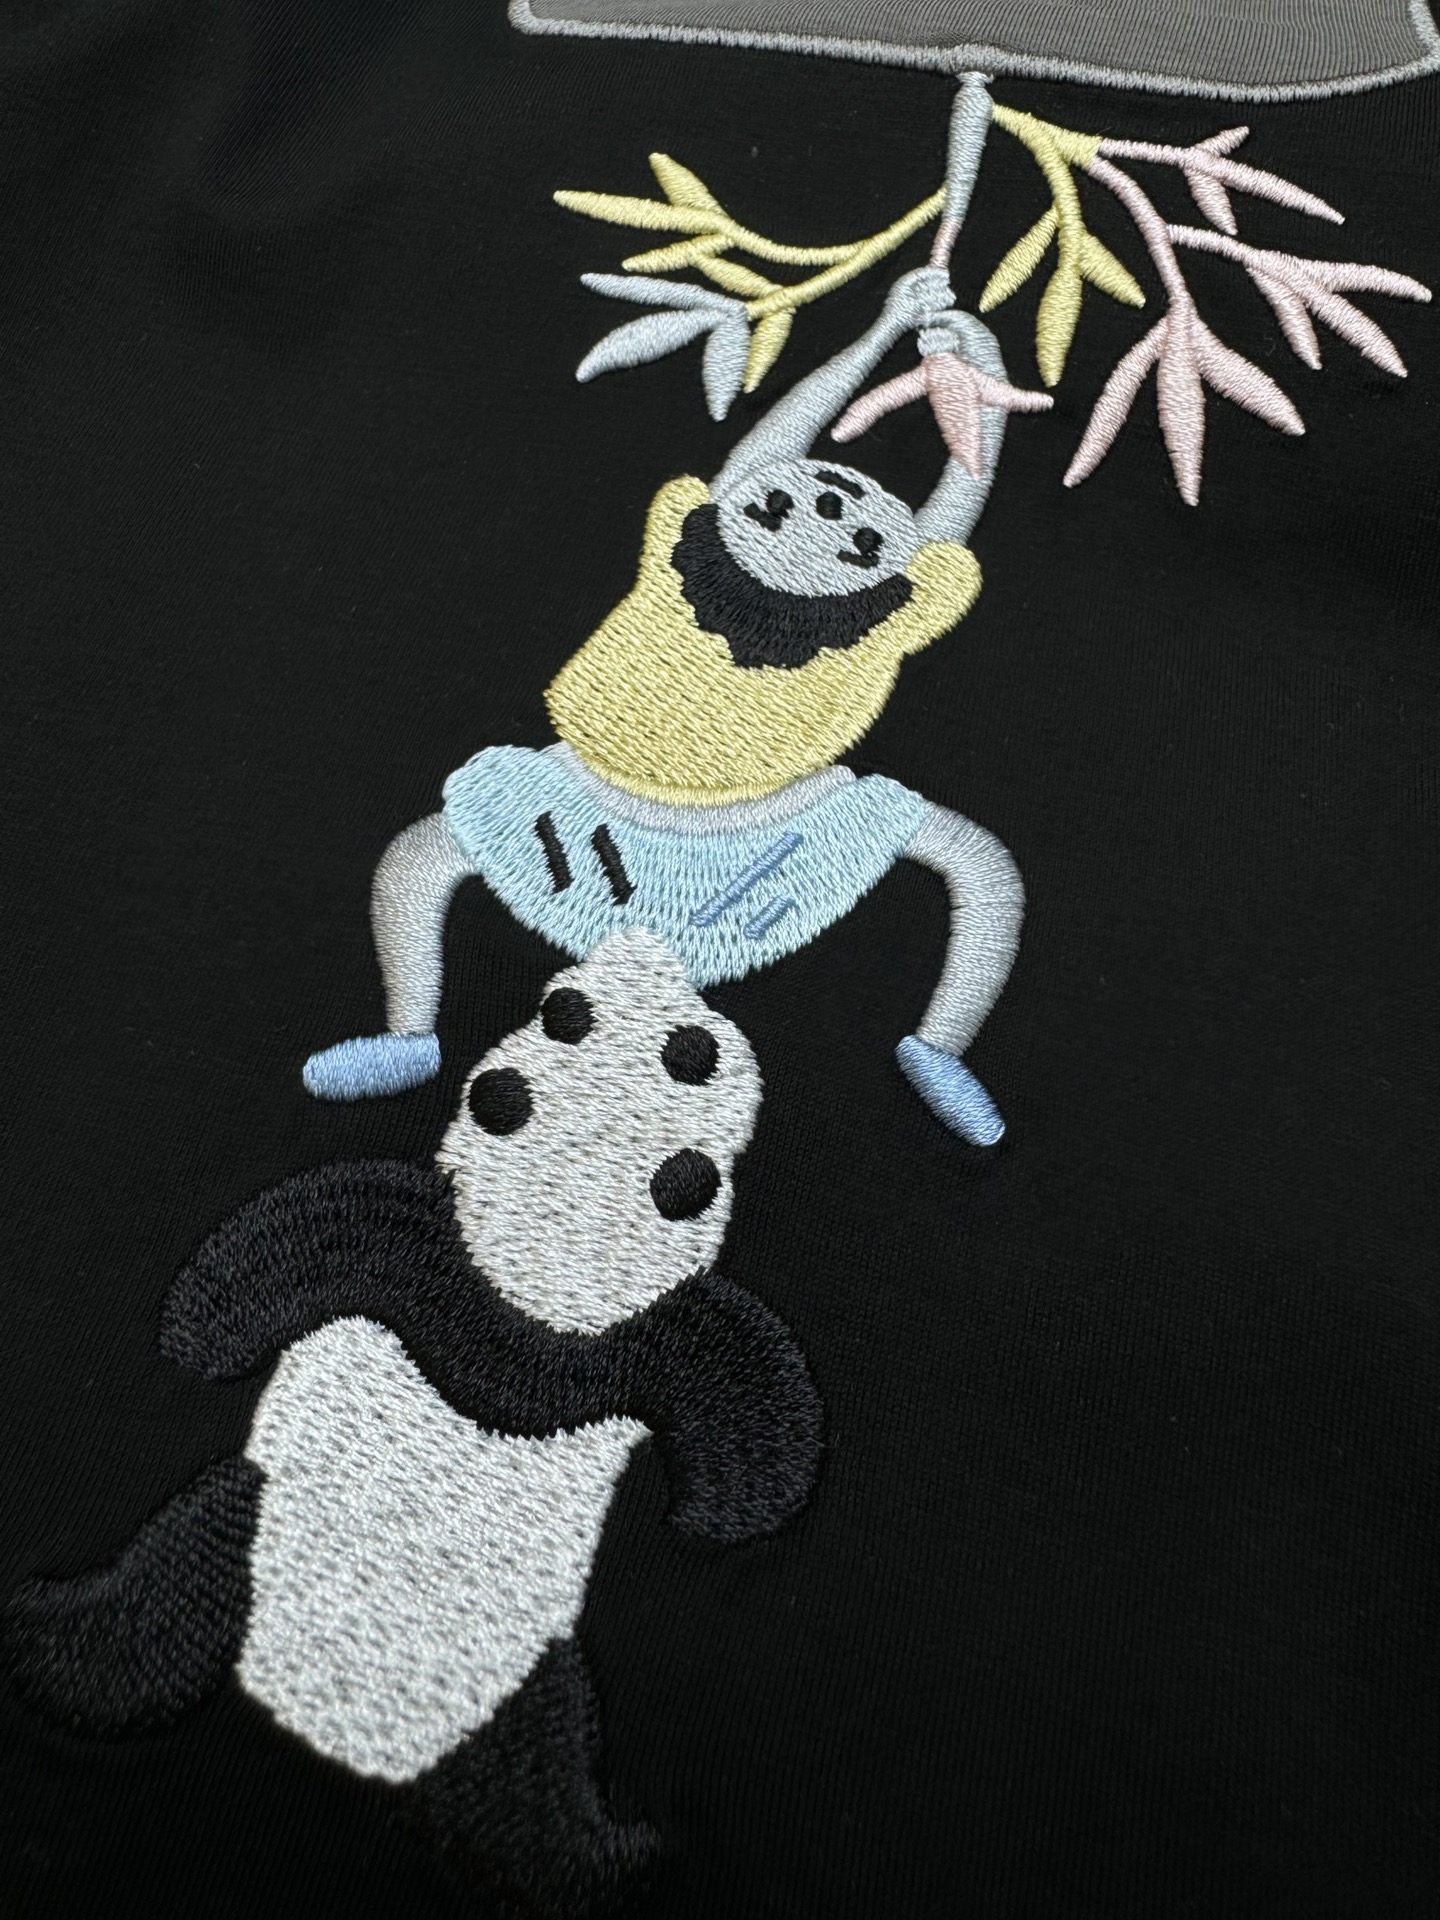 ️鸟语花香心情大好！！LOEW*E罗意-威24S春夏新款T恤.非常意境的一款艺术品！！口袋设计重工刺绣疯